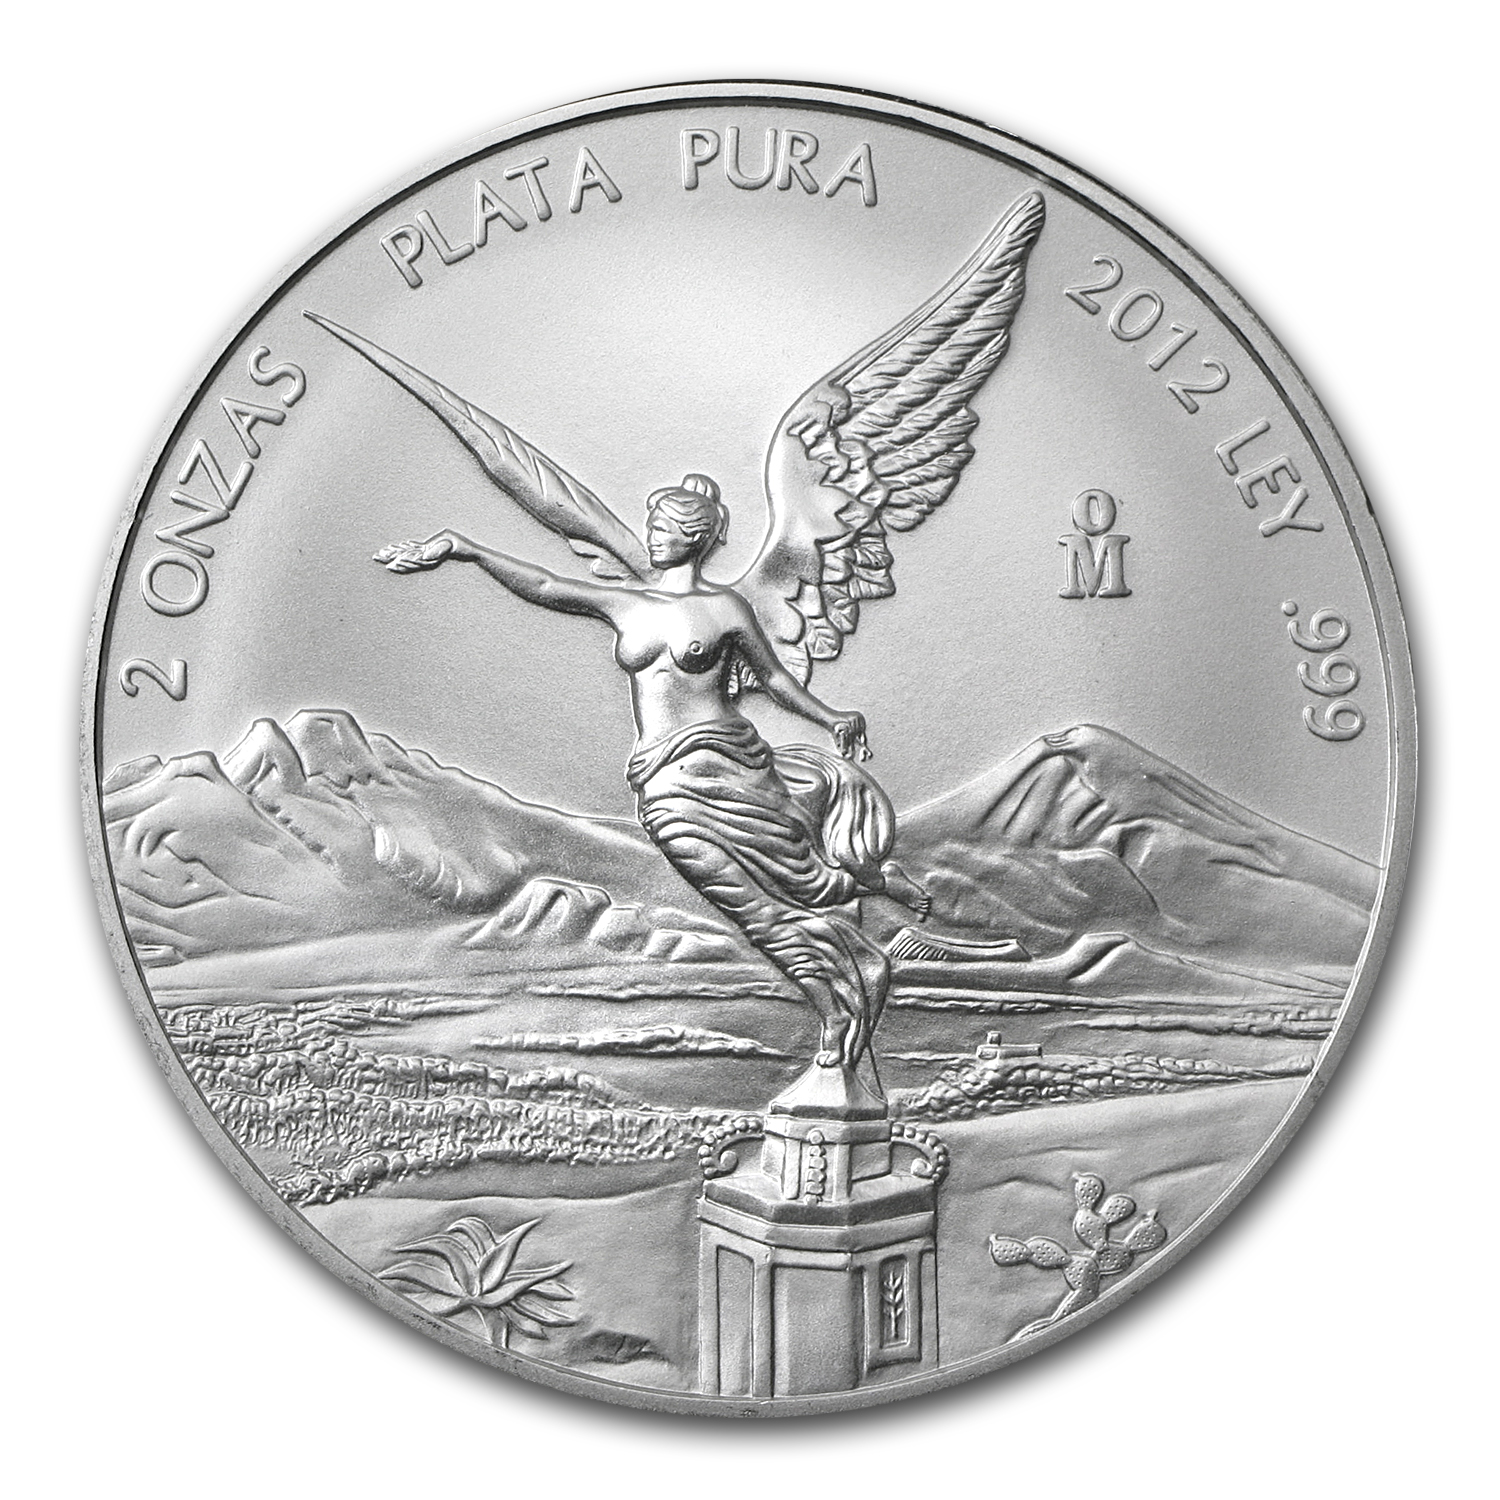 MEXICO 2012 2 oz Silver Coin LIBERTAD